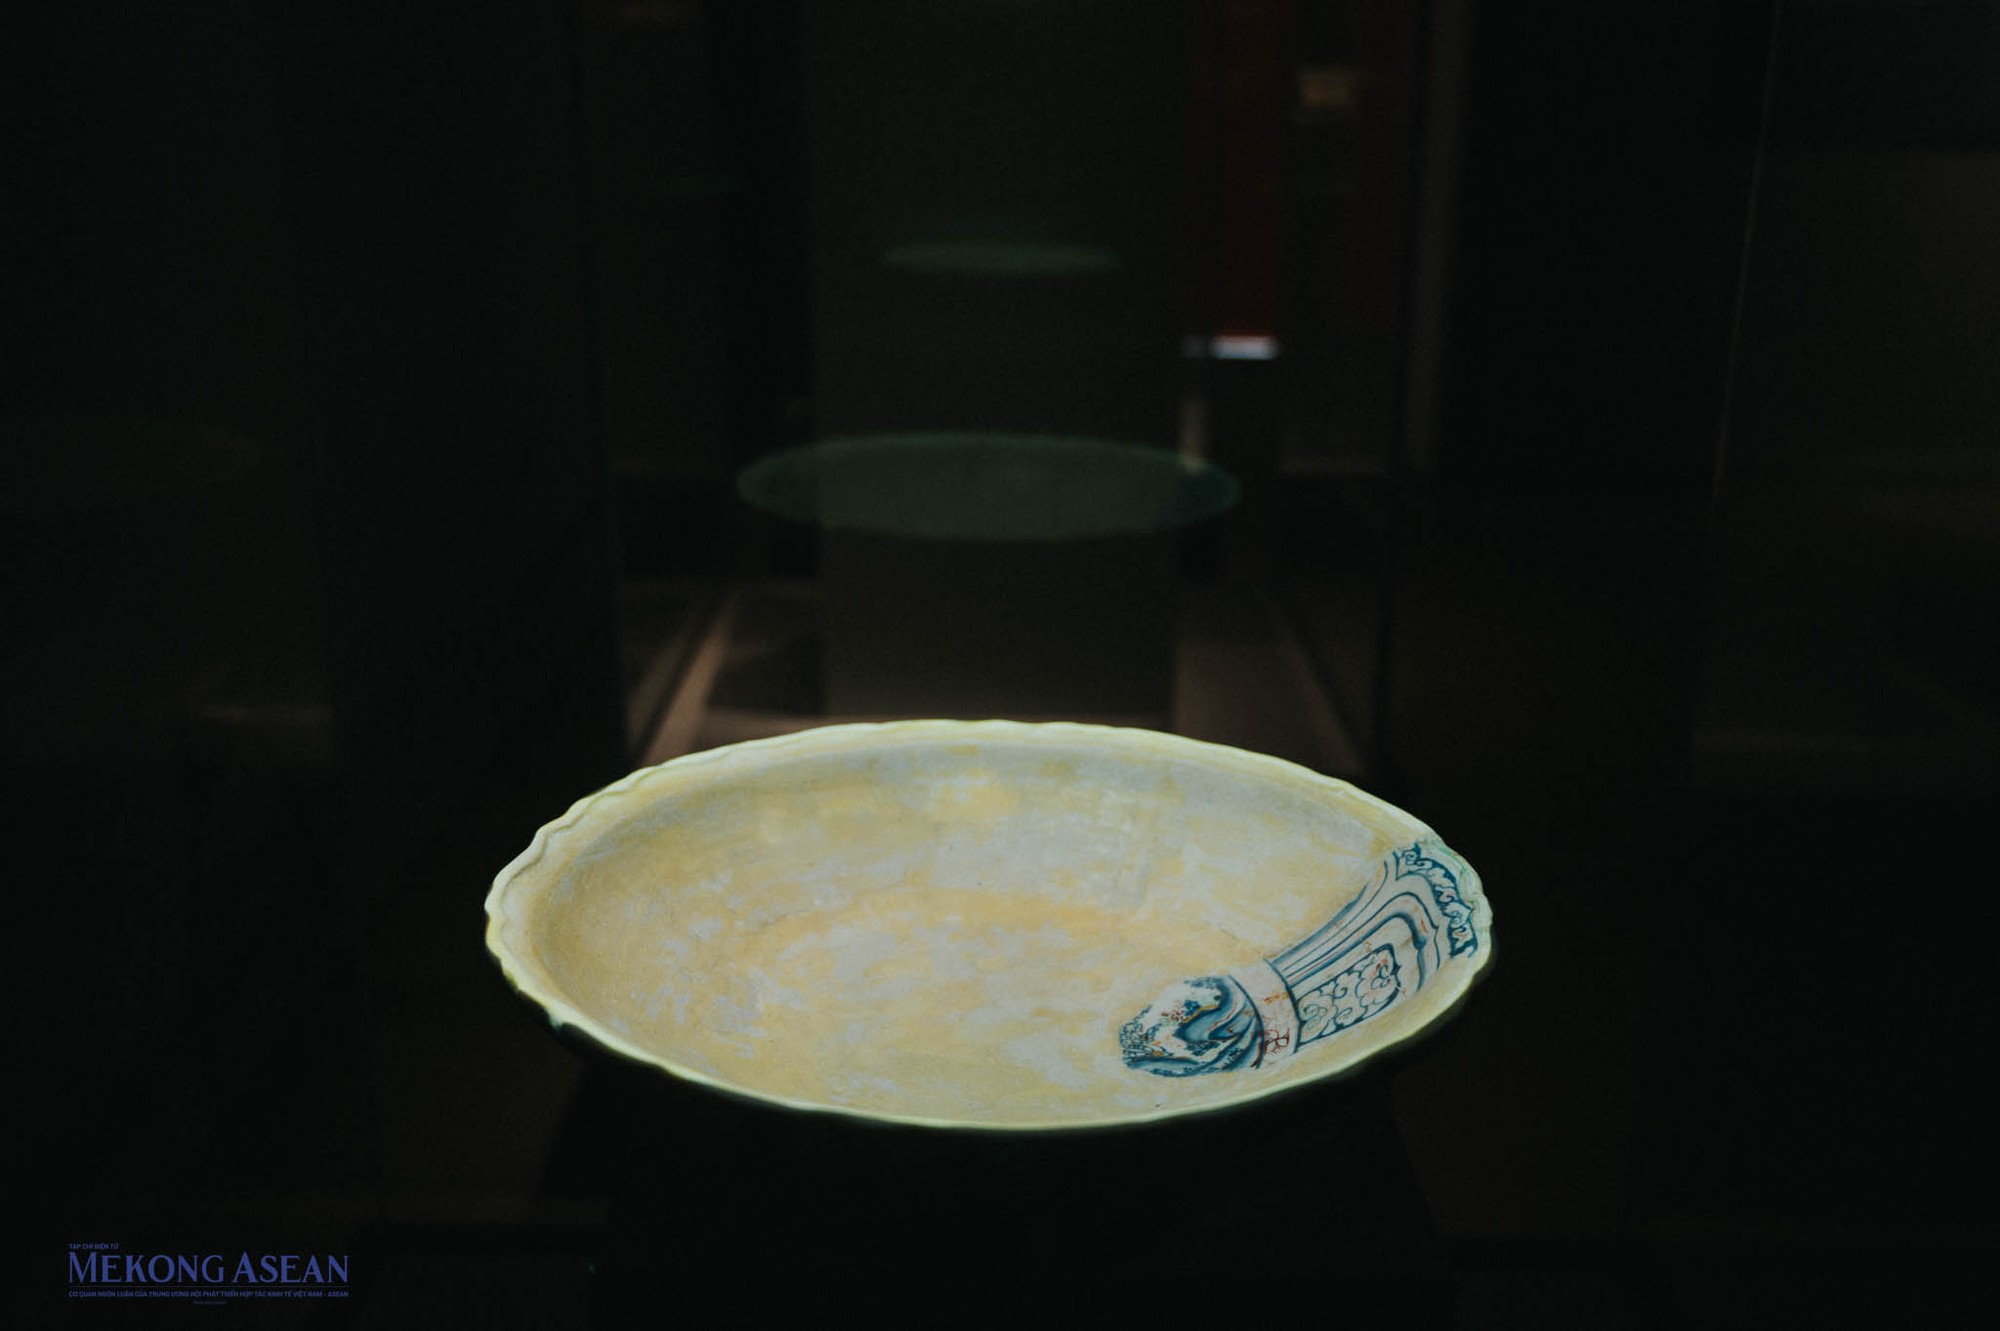 Đĩa gốm vẽ nhiều màu thuộc đồ dùng của nhà vua thời Lê Sơ thế kỷ 15. Dưới sự trợ giúp của công nghệ trình chiếu 3D mapping, những hoa văn, họa tiết bị mất được tái tạo trực quan.